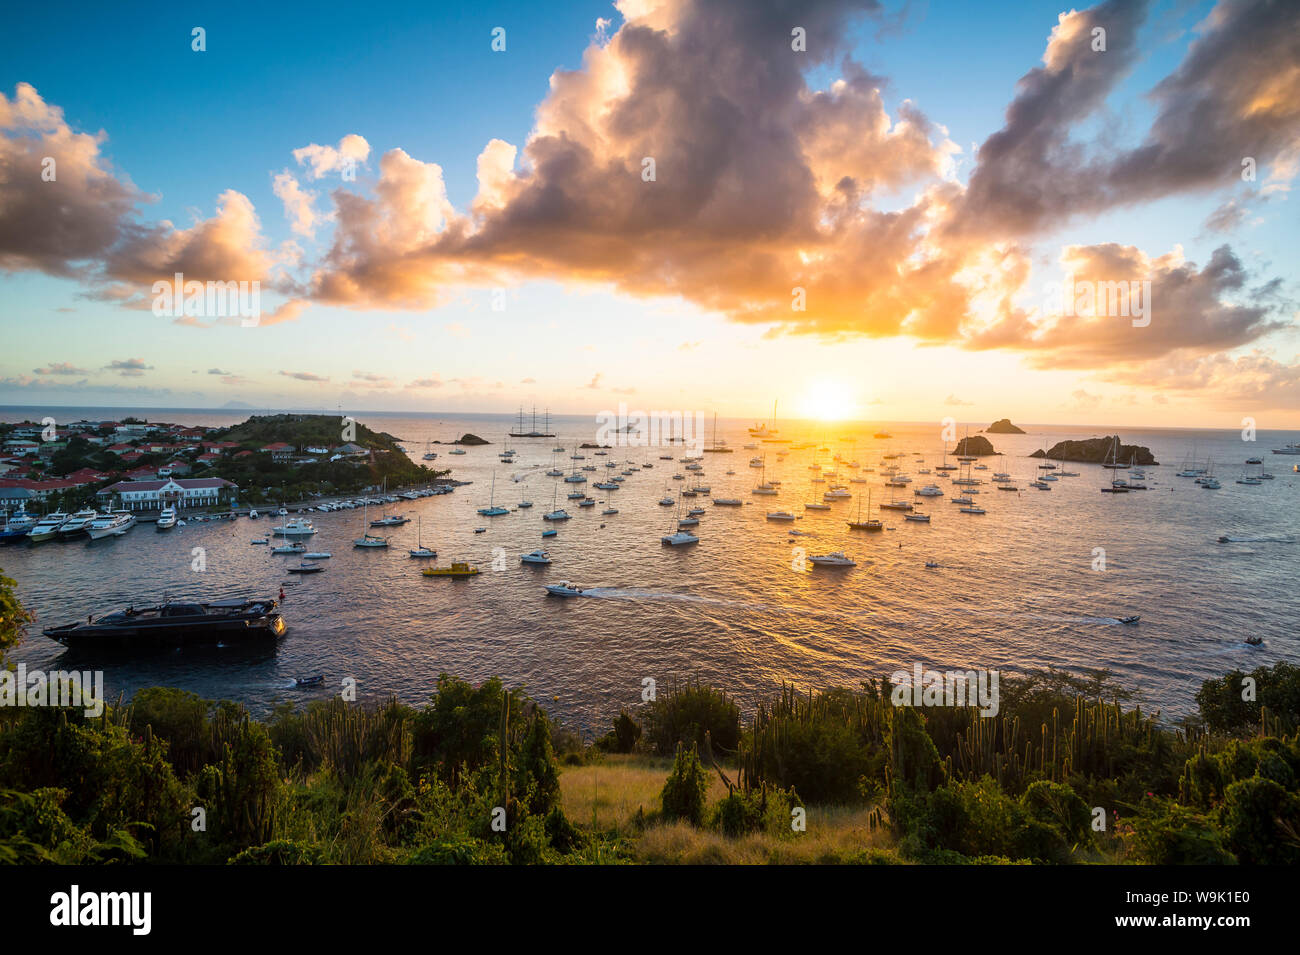 Sonnenuntergang über den Luxus Yachten, in den Hafen von Gustavia, St. Barth (Saint Barthelemy), Kleine Antillen, Karibik, Karibik, Zentral- und Lateinamerika Stockfoto